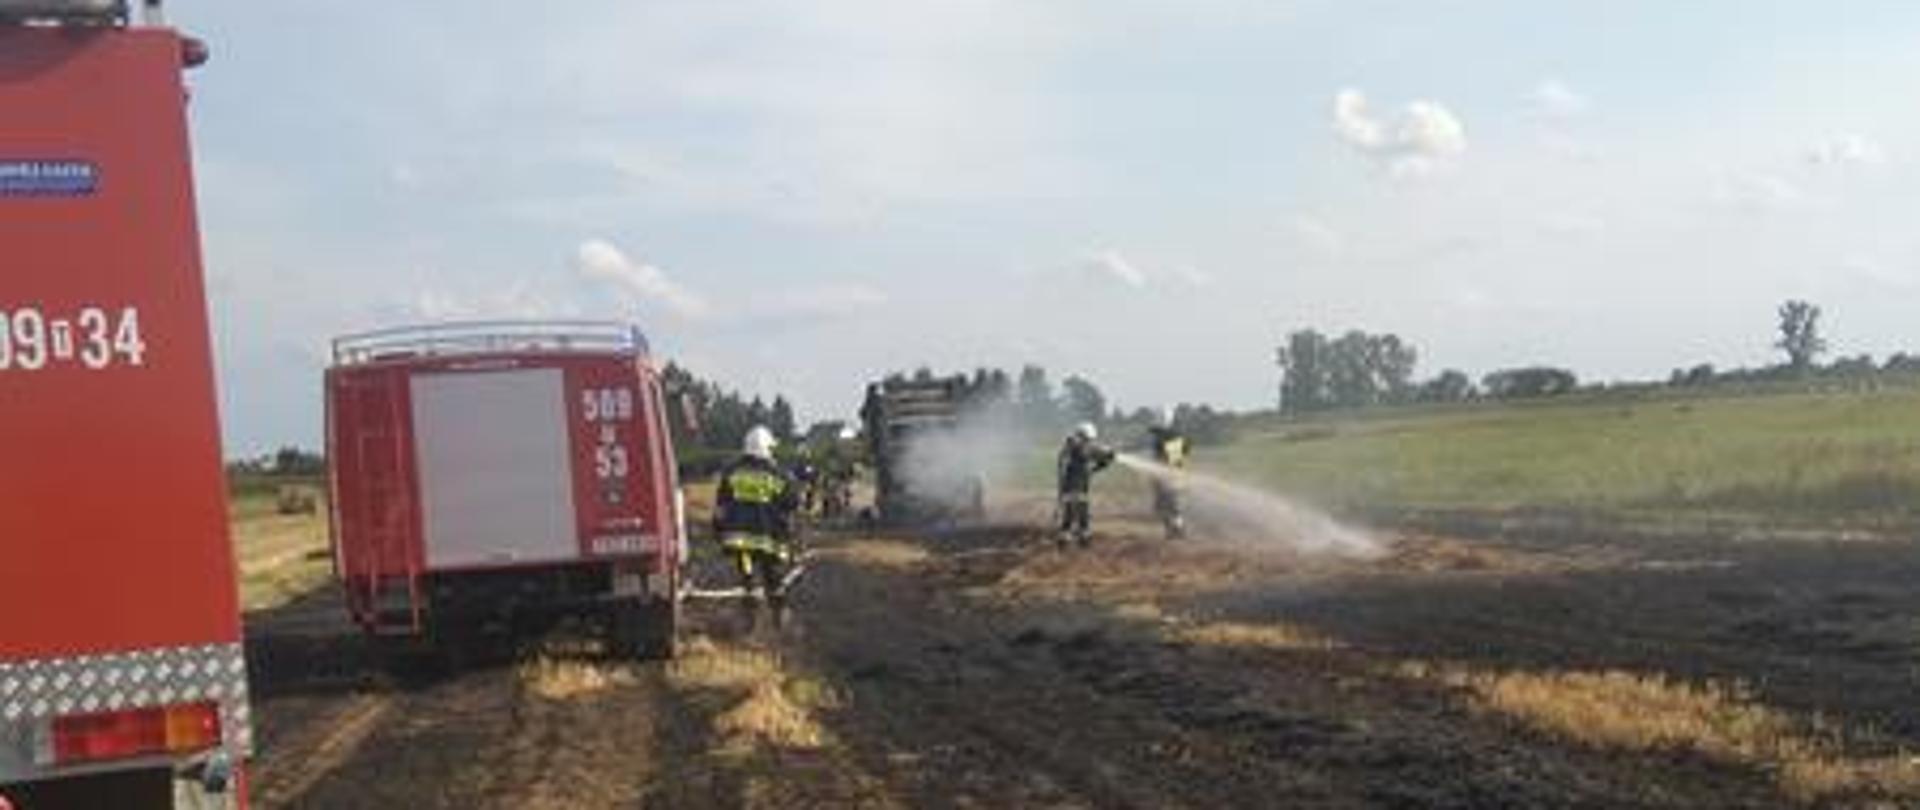 Działania ratowniczo-gaśnicze przy pożarze w miejscowości Przeczów